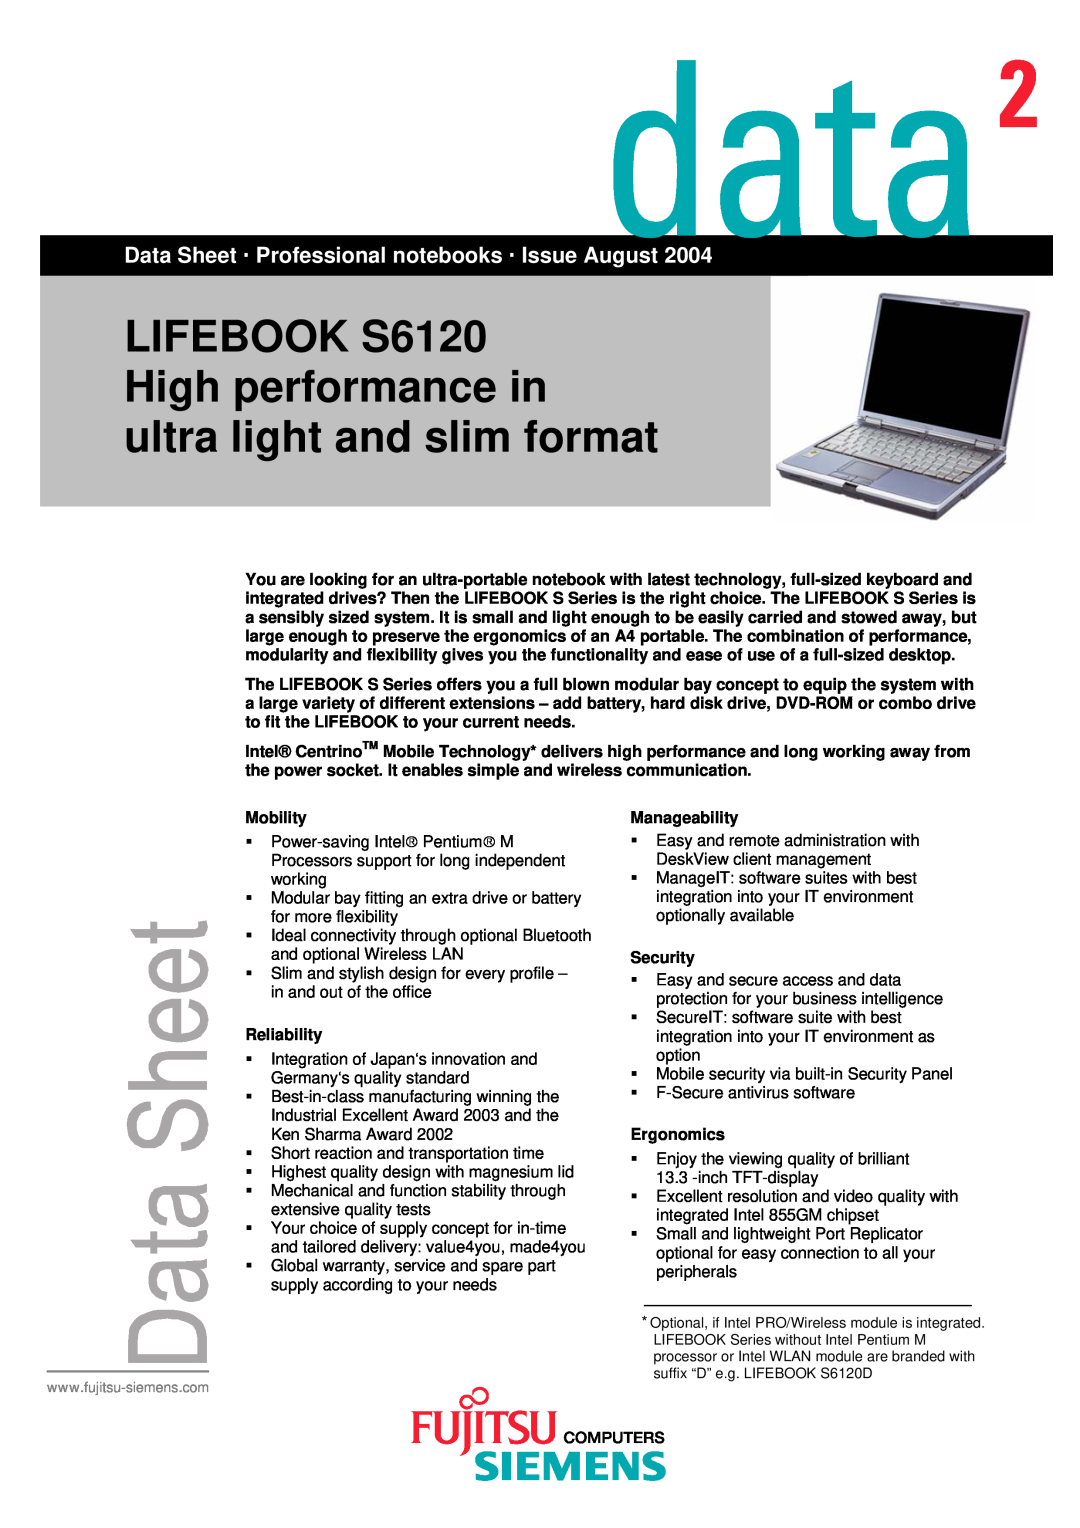 Fujitsu user manual Your user manual FUJITSU SIEMENS LIFEBOOK S6120 